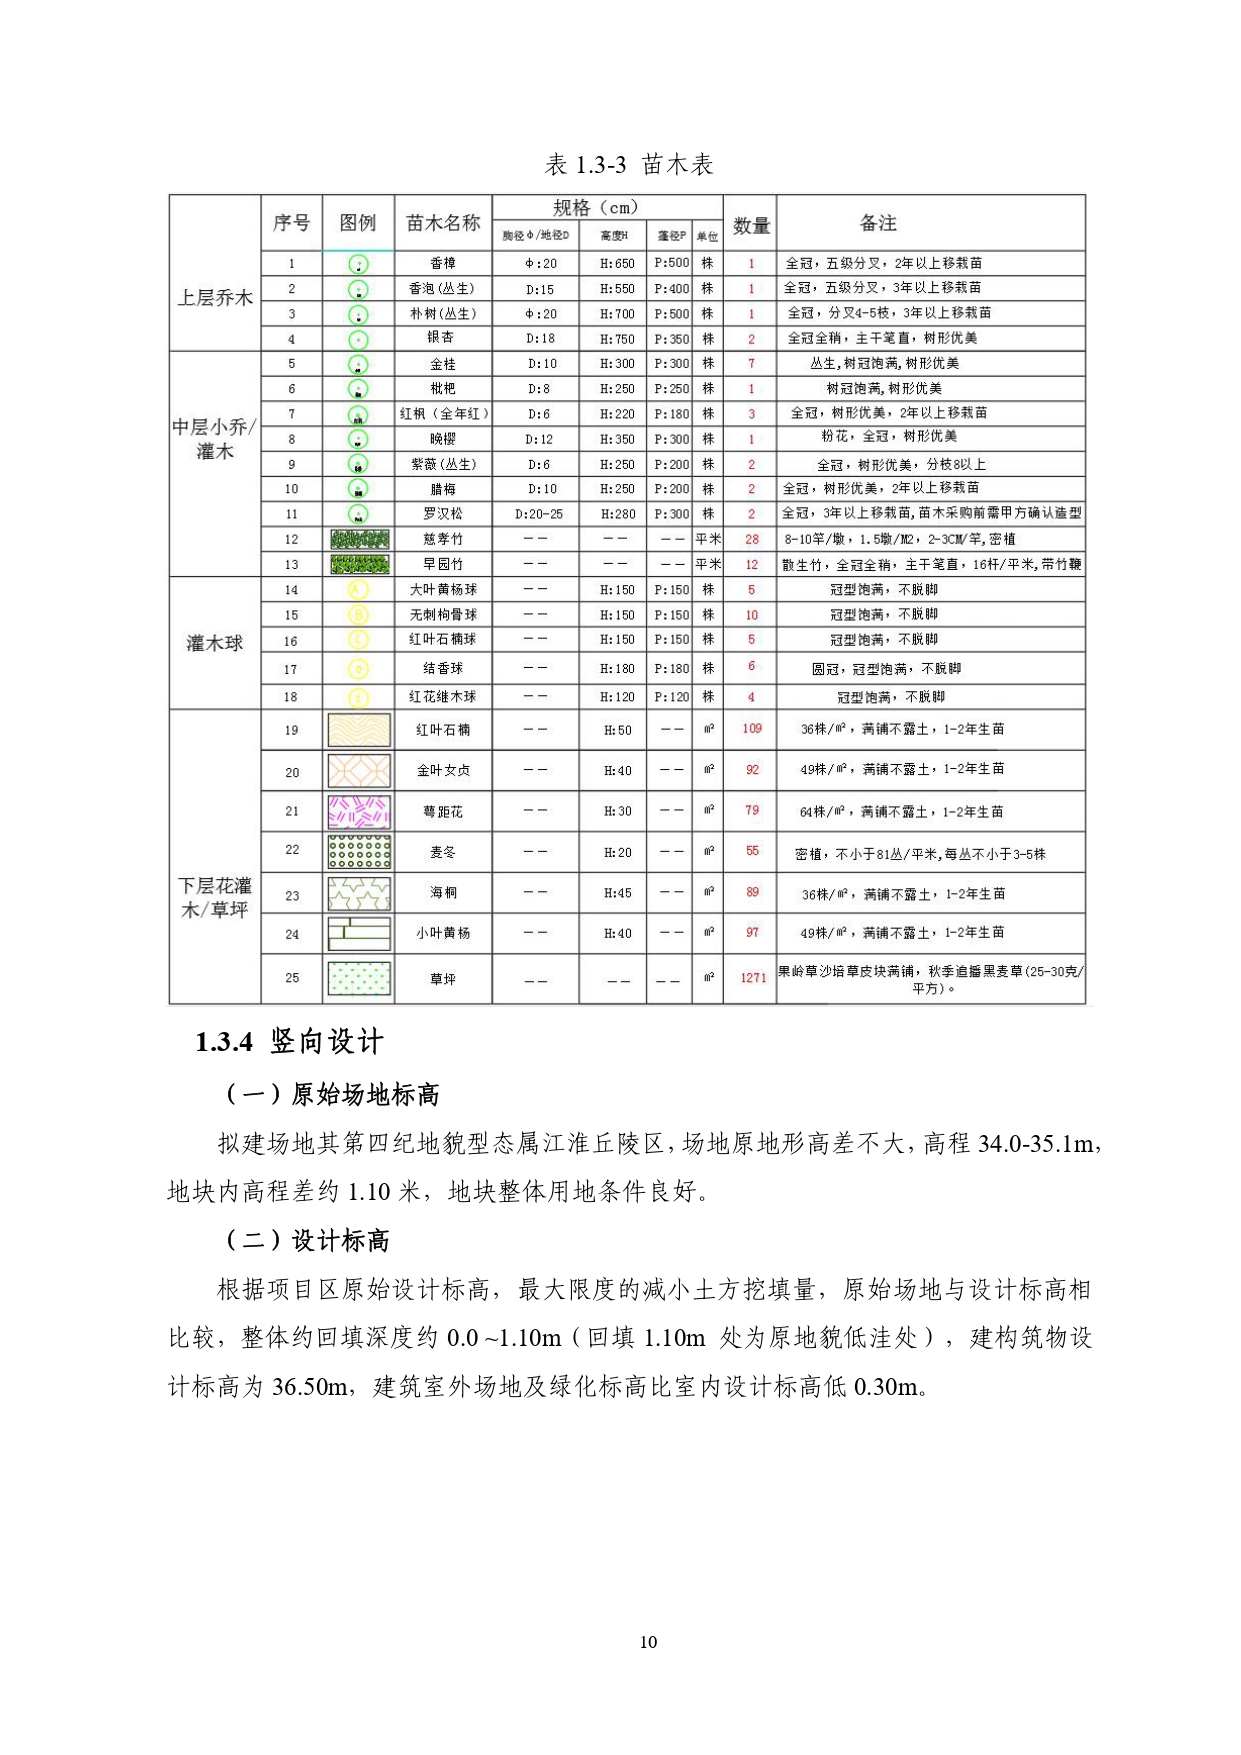 01-中果广场大厦项目水土保持报告表-打印_page-0021.jpg